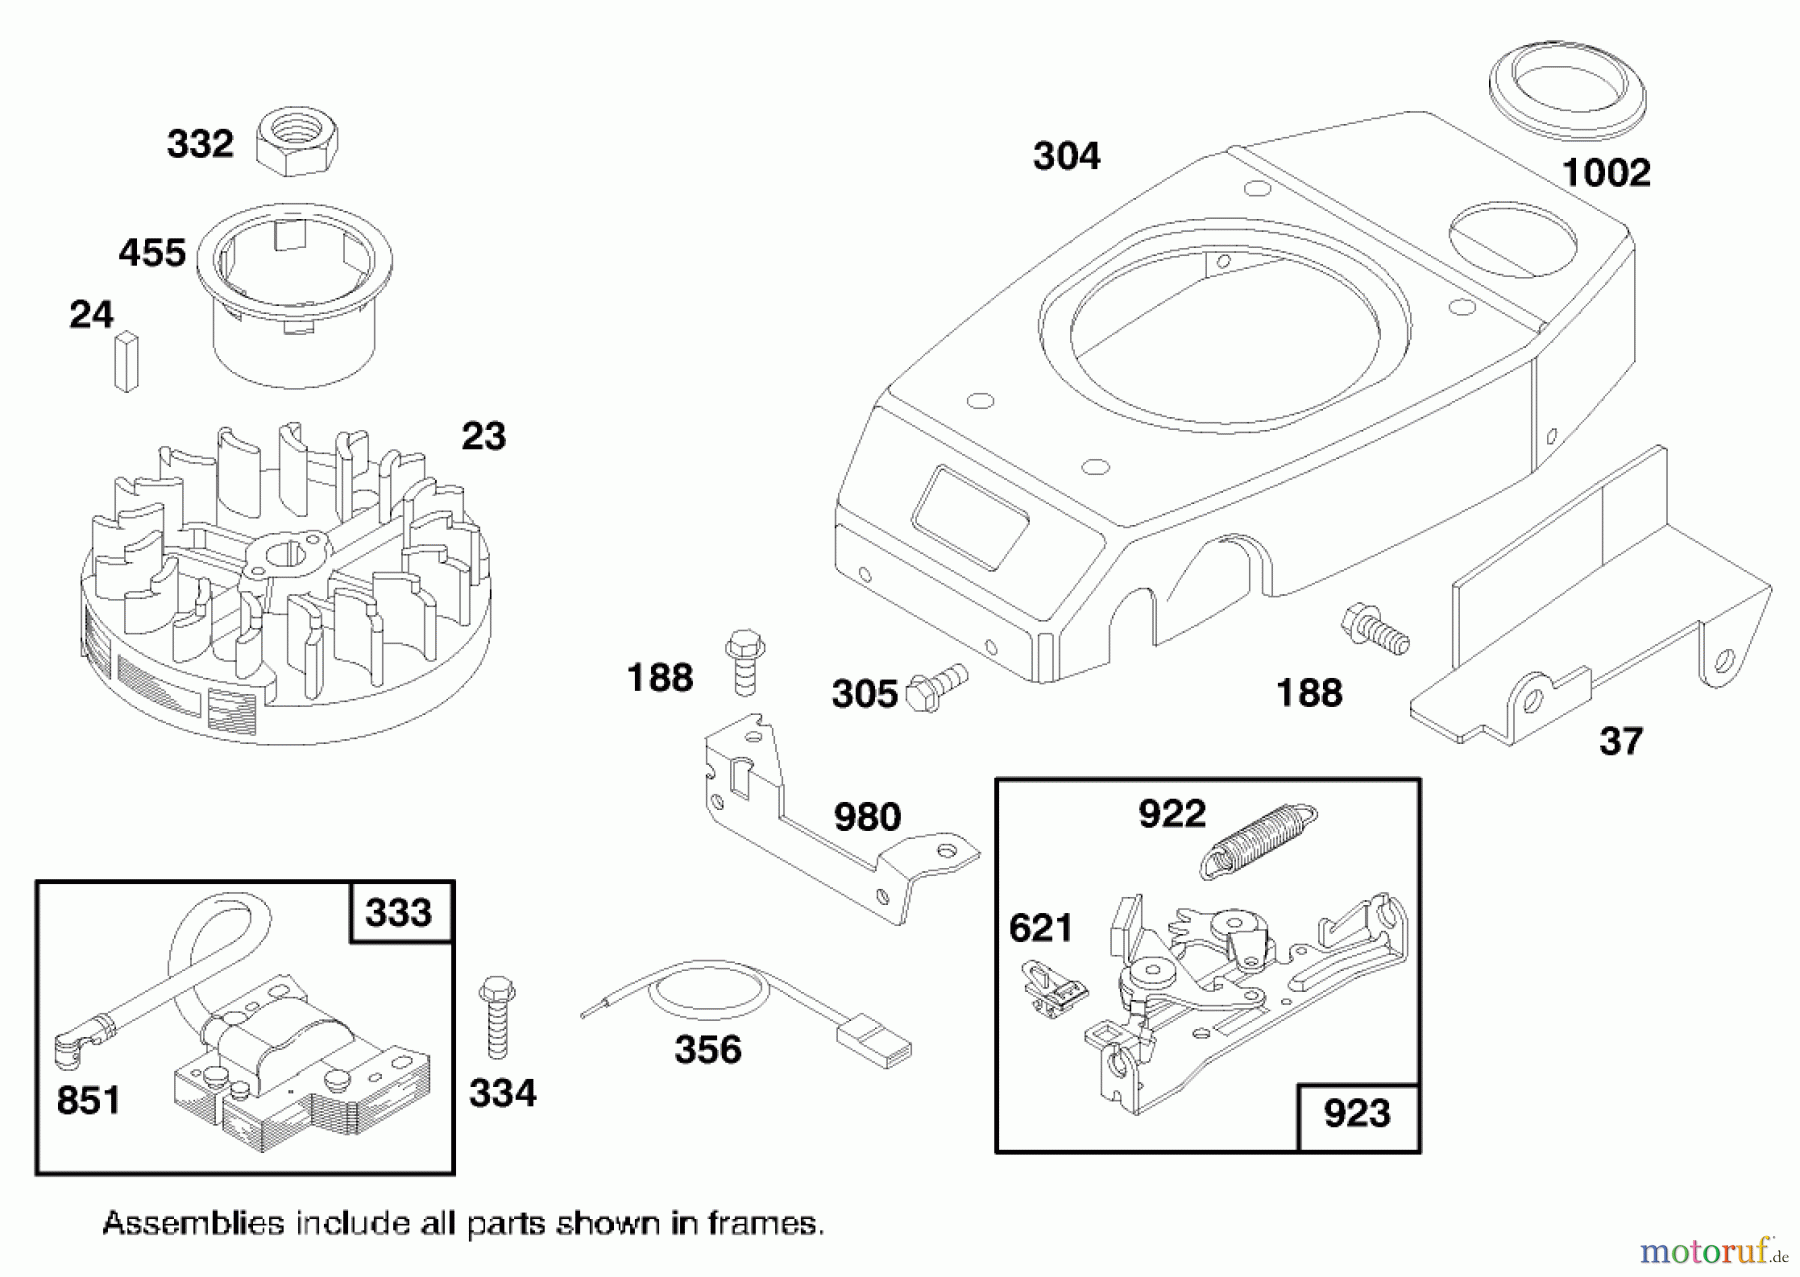  Toro Neu Mowers, Walk-Behind Seite 1 20474 - Toro Super Recycler Lawnmower, 1996 (6900001-6999999) ENGINE GTS 150 #7